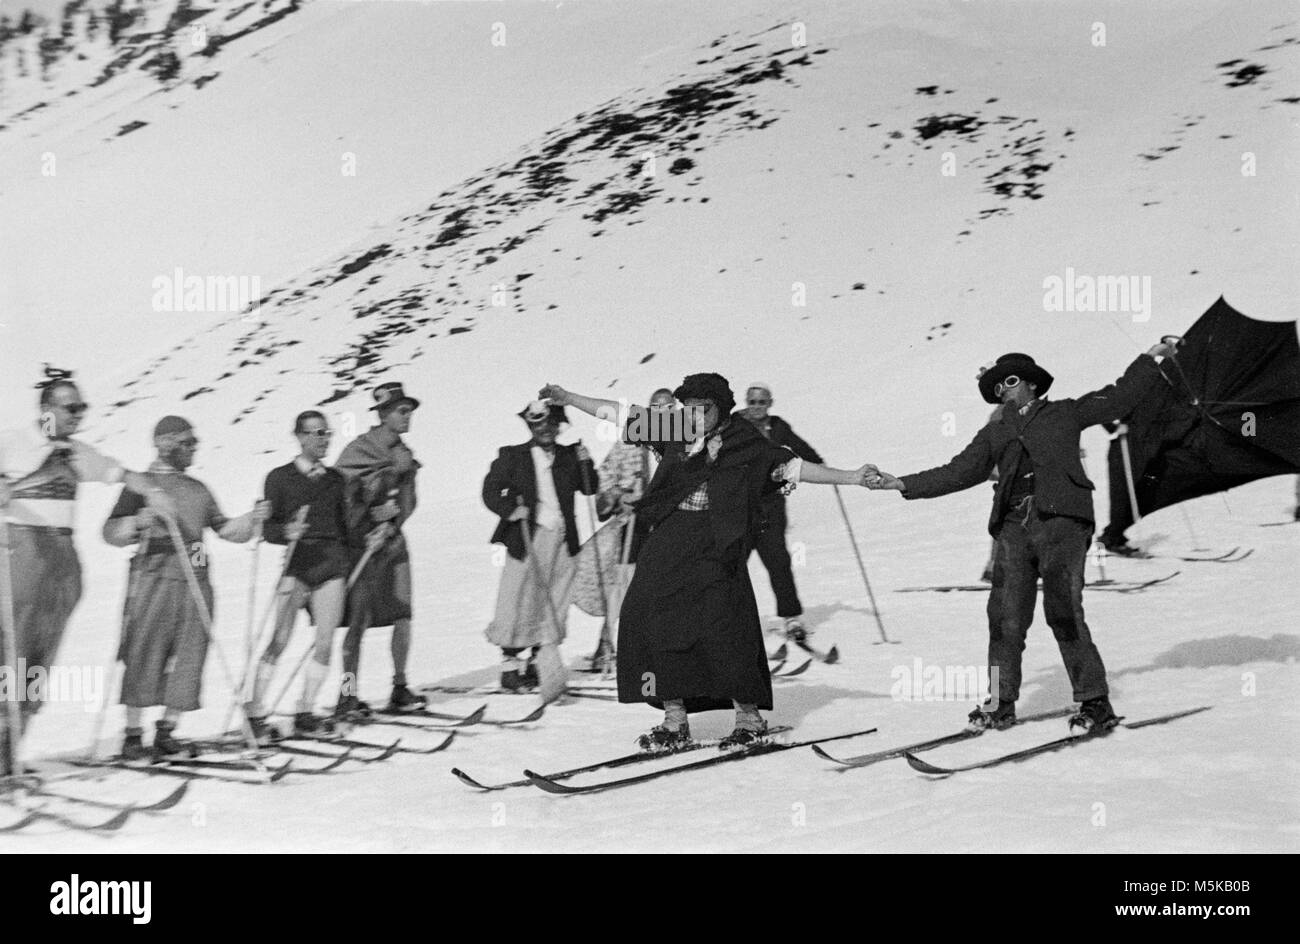 Sciare in Svizzera nel 1937. Un gruppo di appassionati di sci in costume sulle piste da sci. Foto Stock